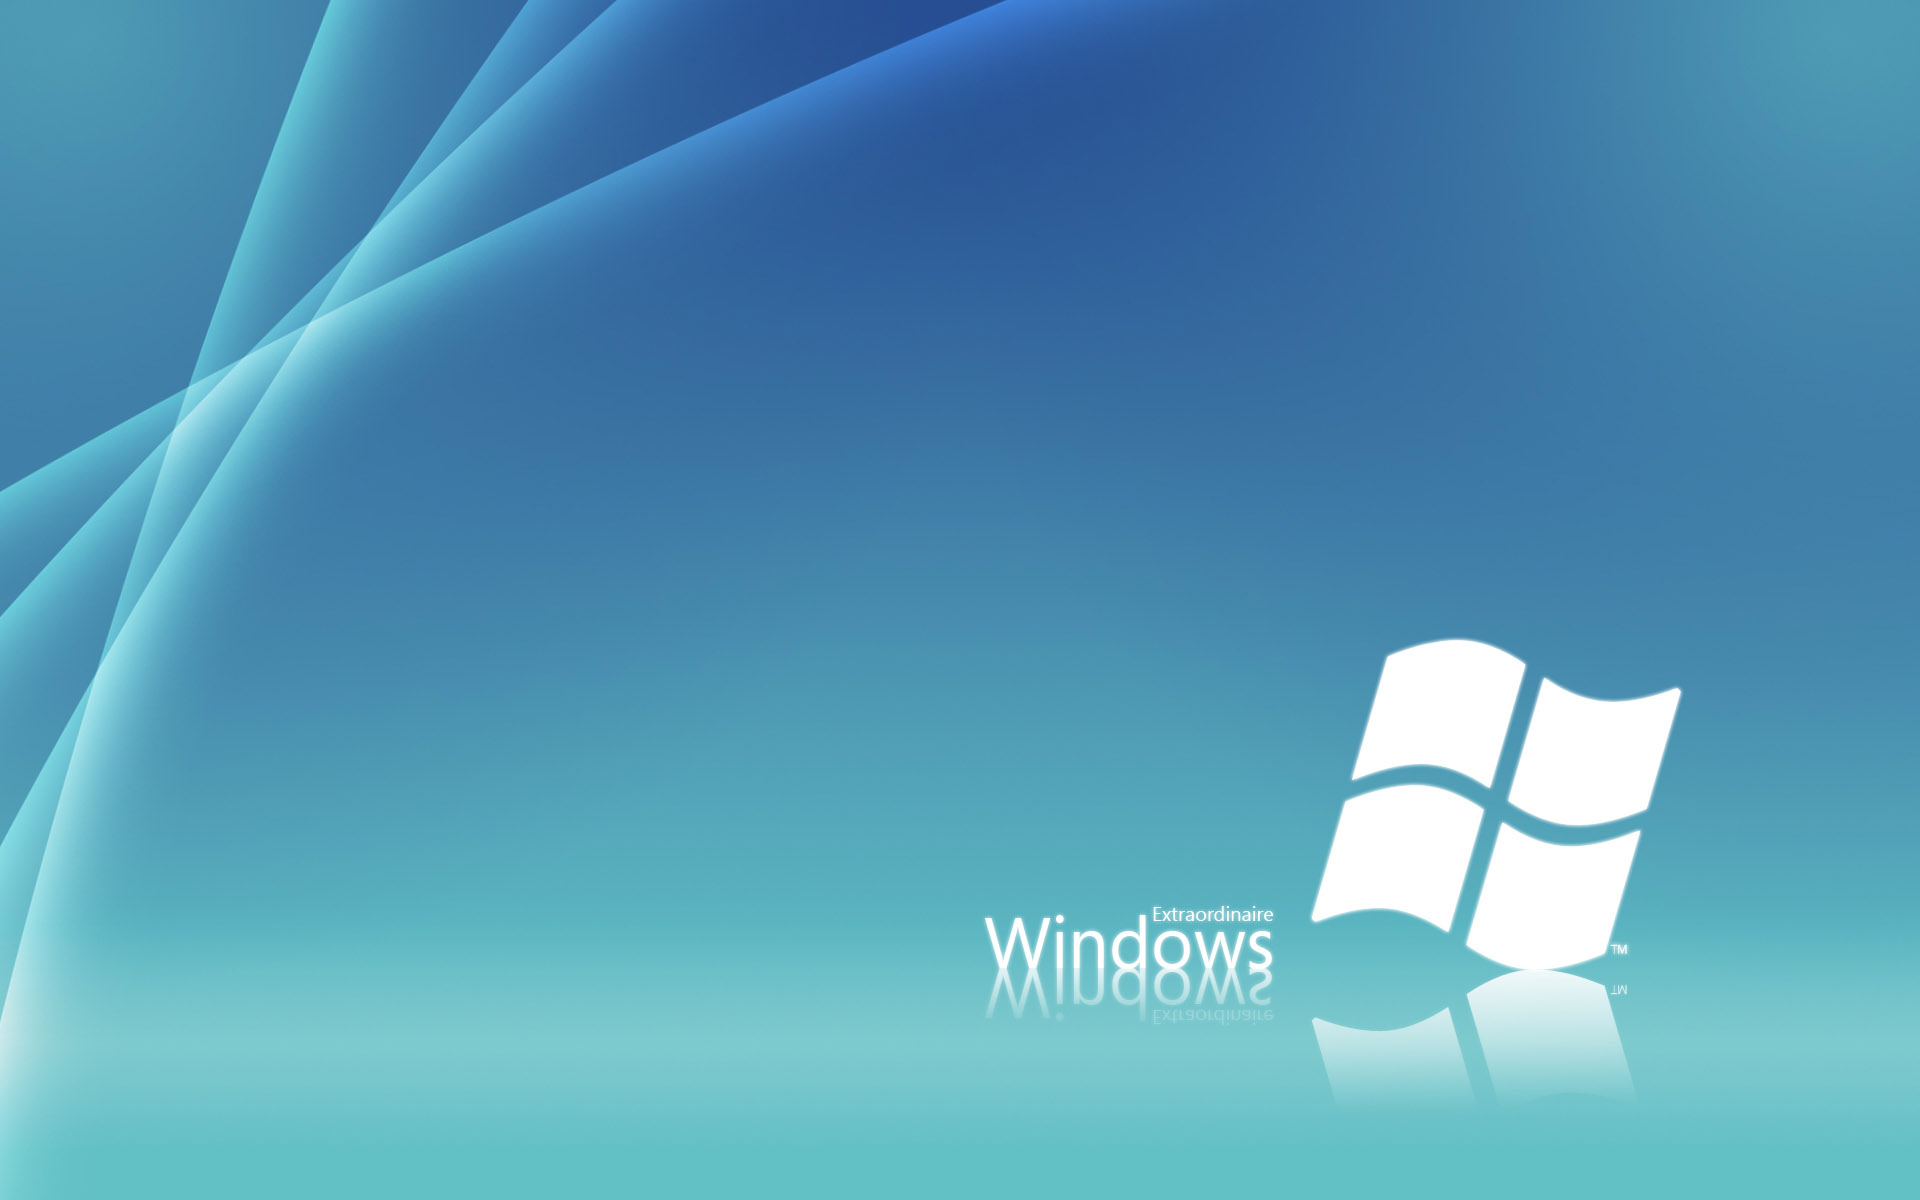 Windows 7 高清壁纸 桌面背景 1920x1200 Id 87436 Wallpaper Abyss